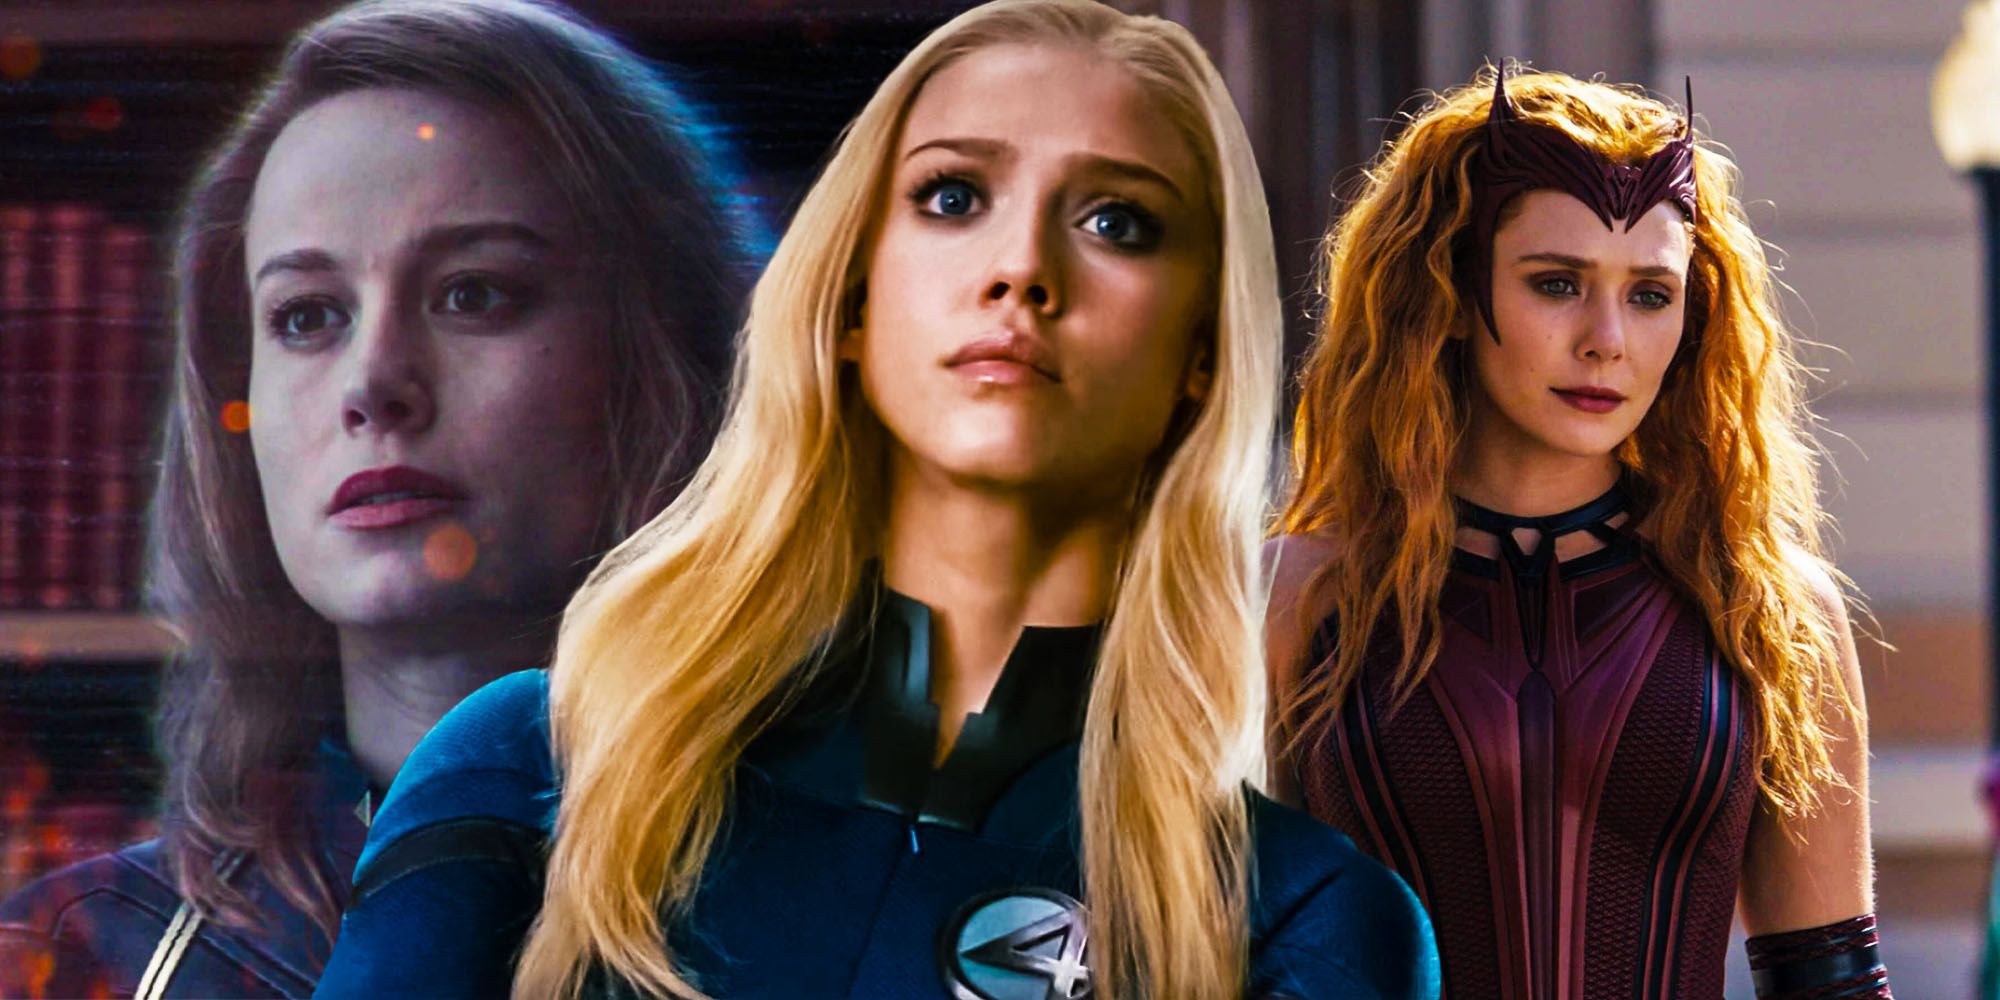 La fase 4 finalmente puede arreglar el peor insulto de personaje femenino de Marvel